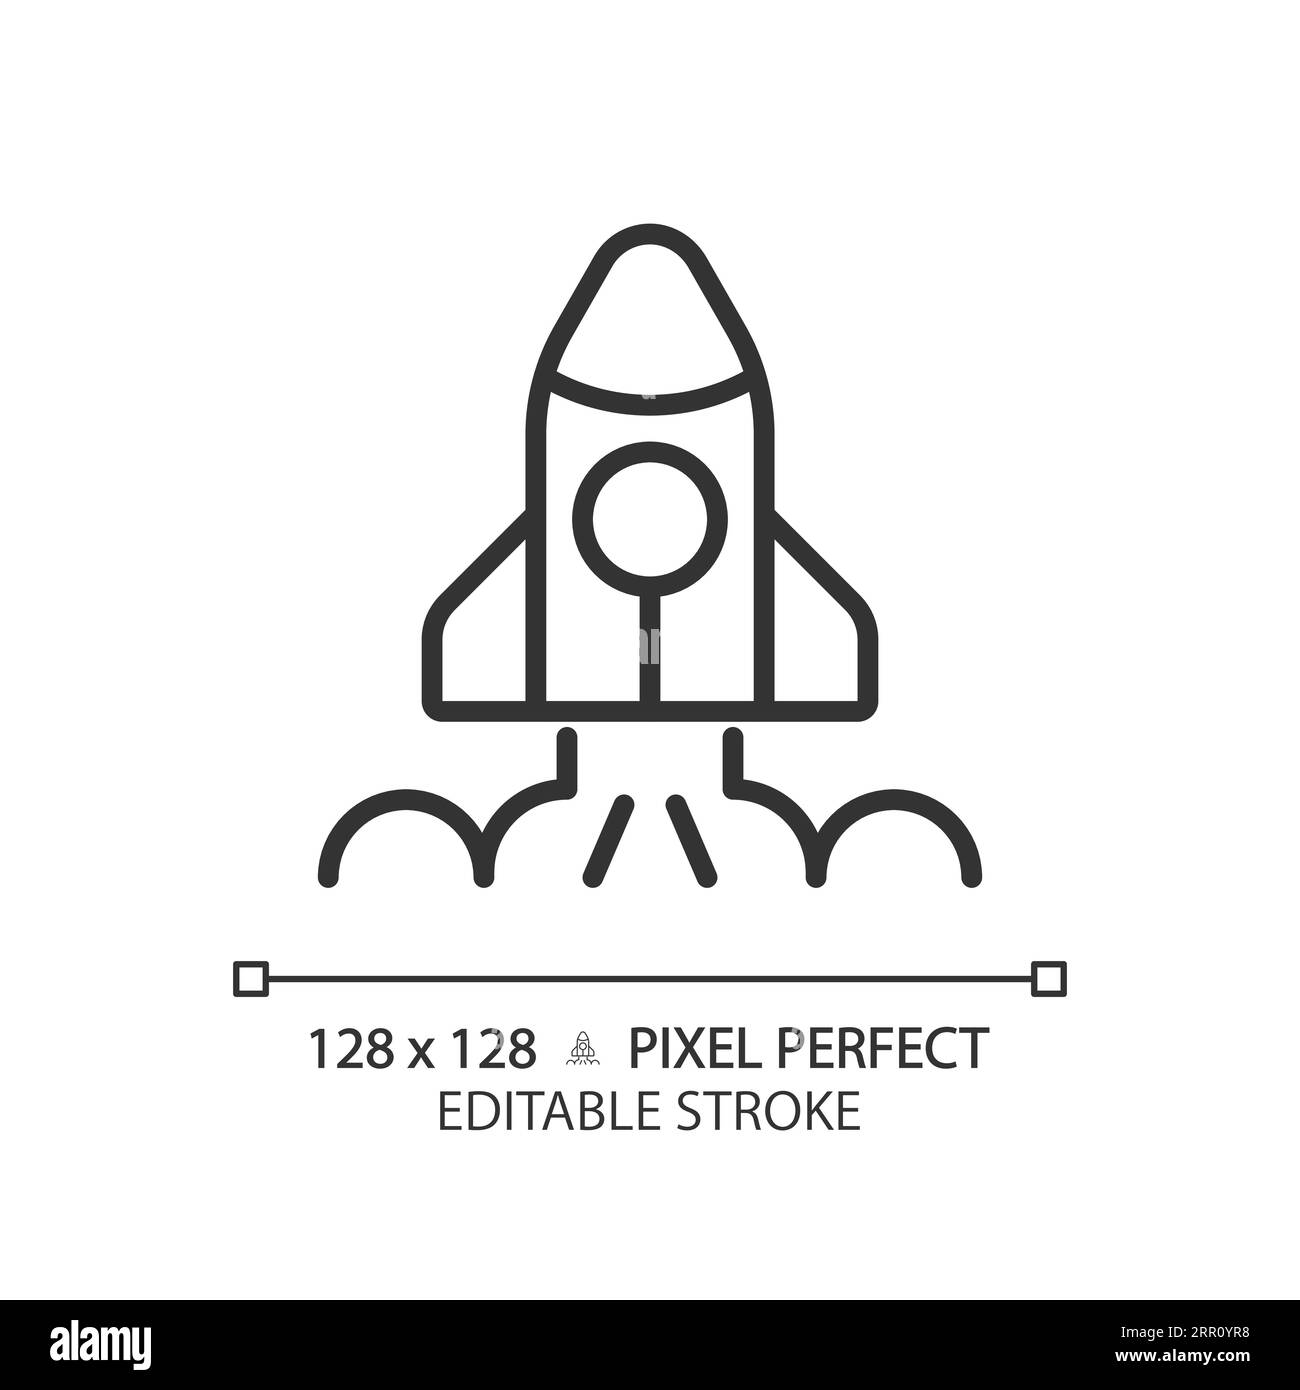 Icône linéaire pixel Perfect de lancement spatial Illustration de Vecteur